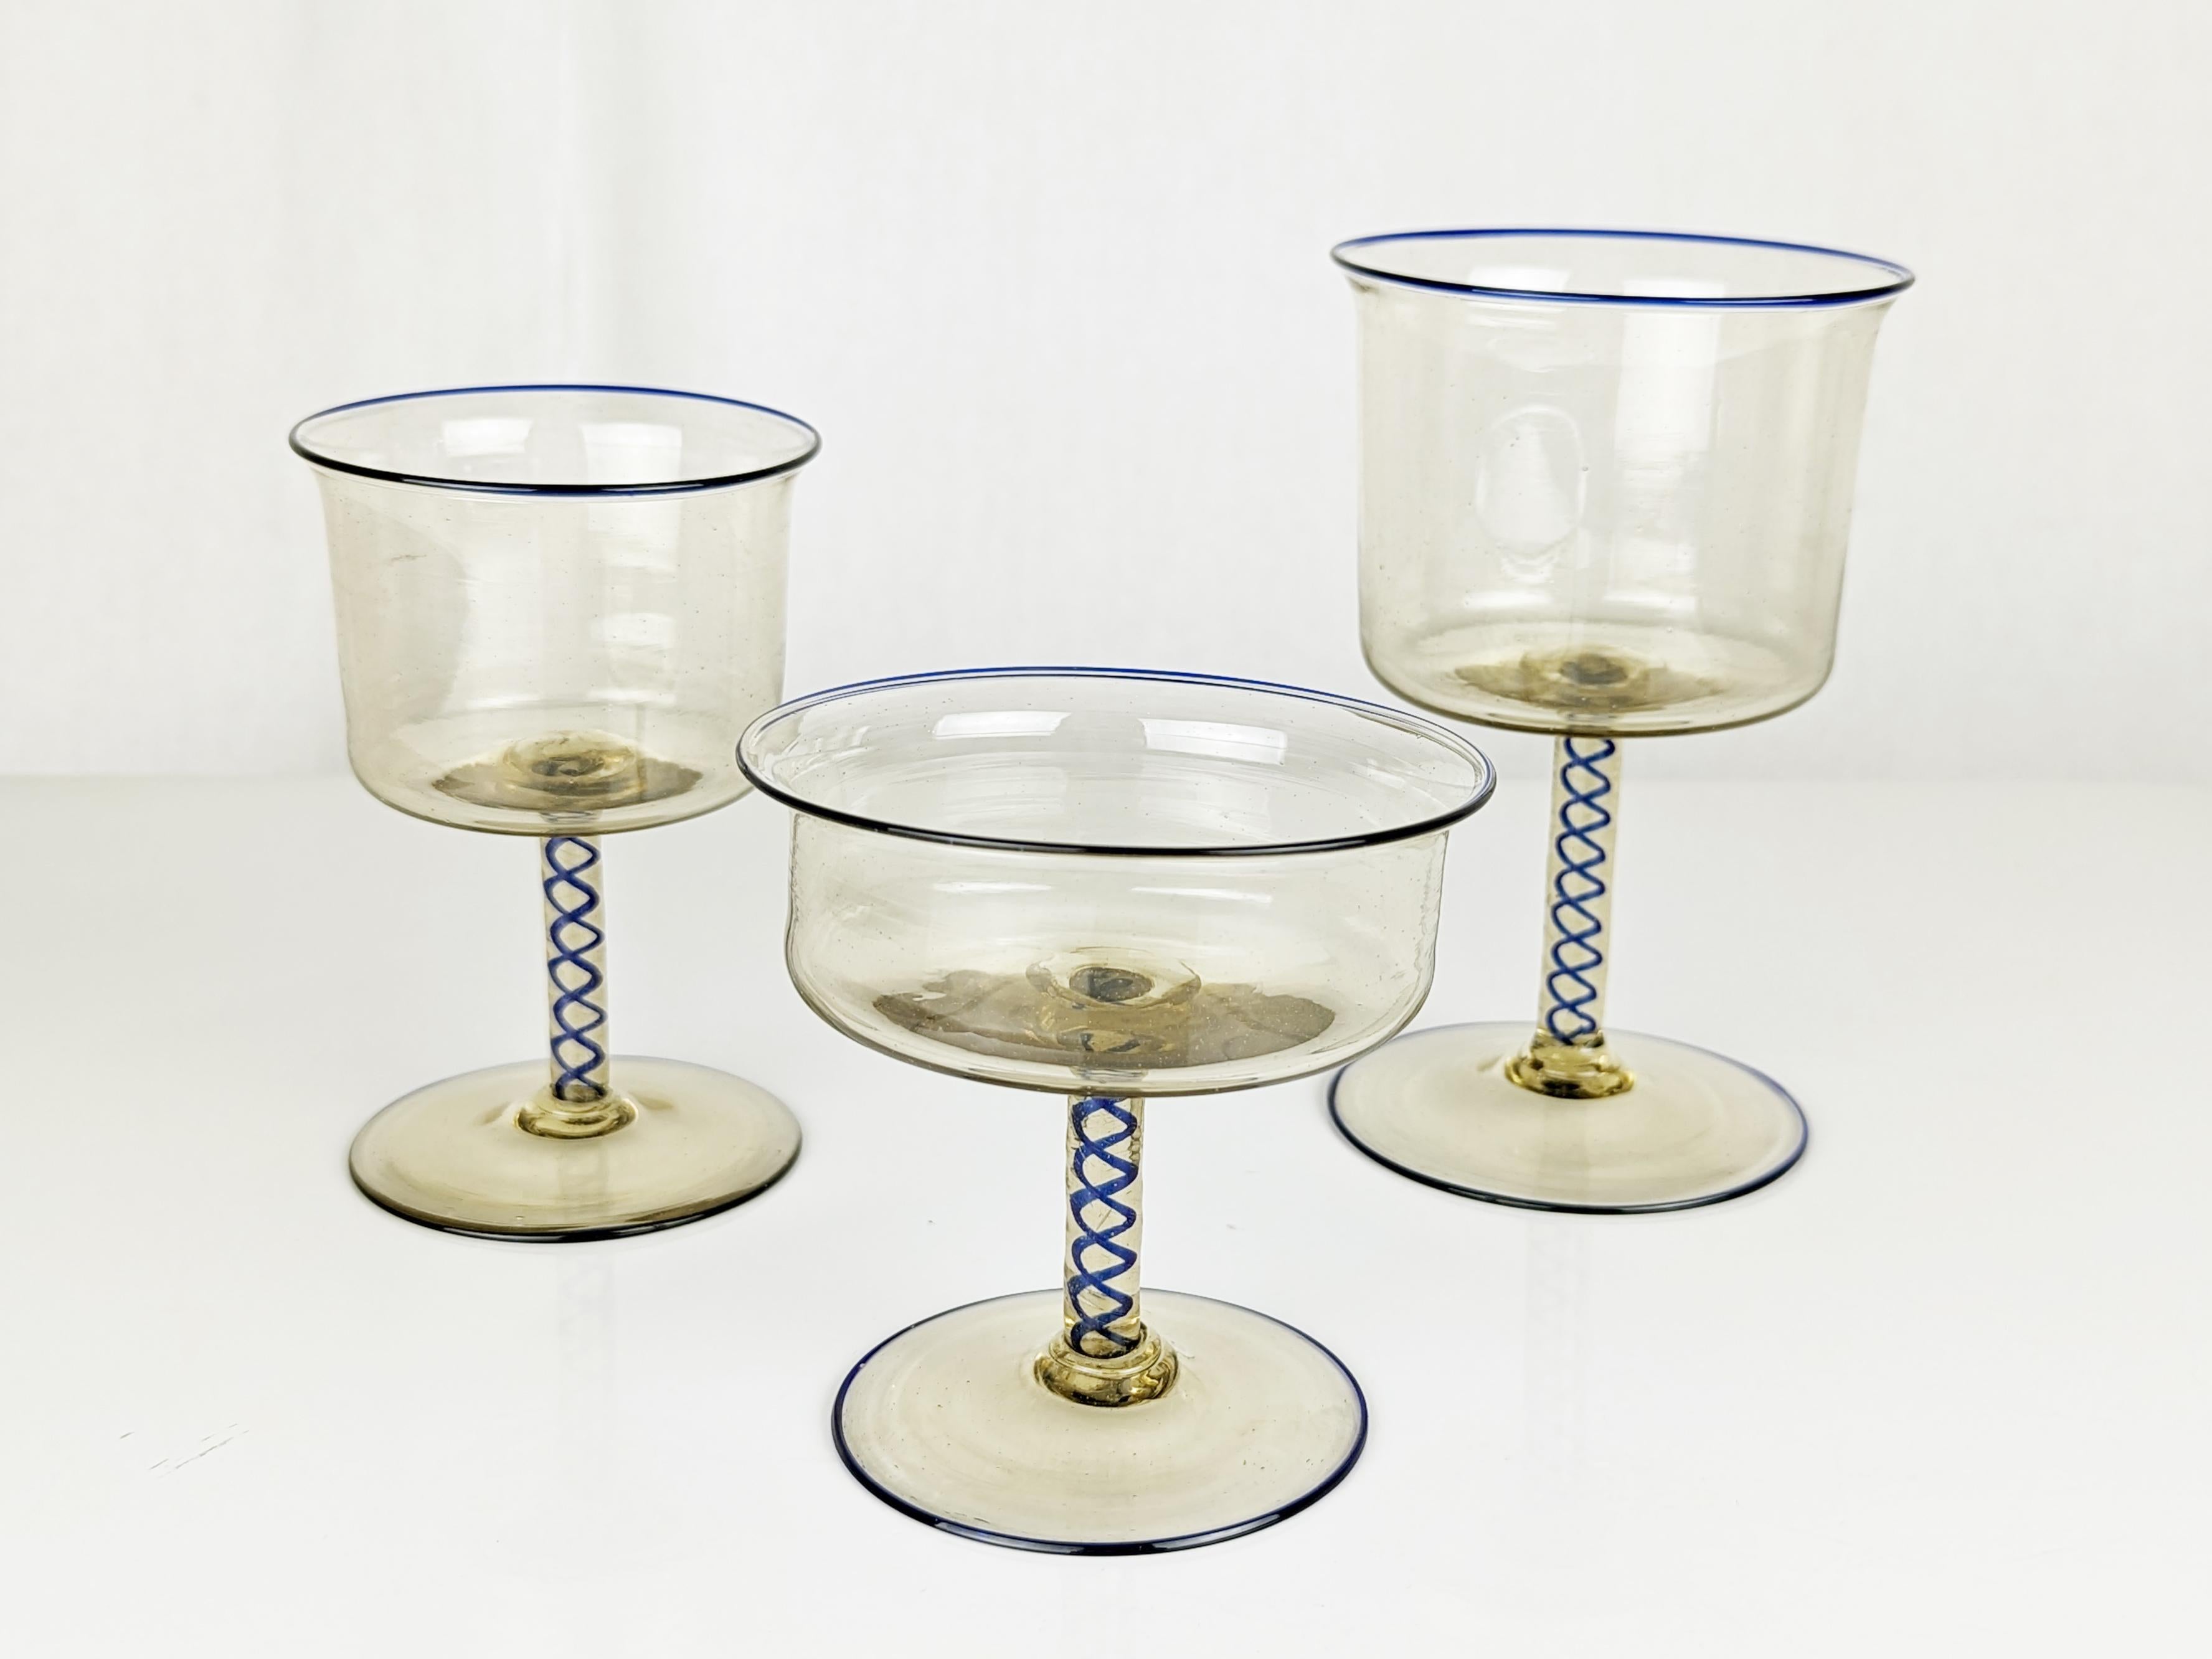 Satz von 18 Bechern aus Murano-Glas, hergestellt von Vittorio Zecchin für die Murano-Glasfabrik Pauly & Co in den 1930er Jahren.
Das Set besteht aus 3 verschiedenen Gläsern ( cm 14h x 8,7;  cm 11,5h x 7,7d; cm 9,3h x 9,3d ) und gehört zur Serie